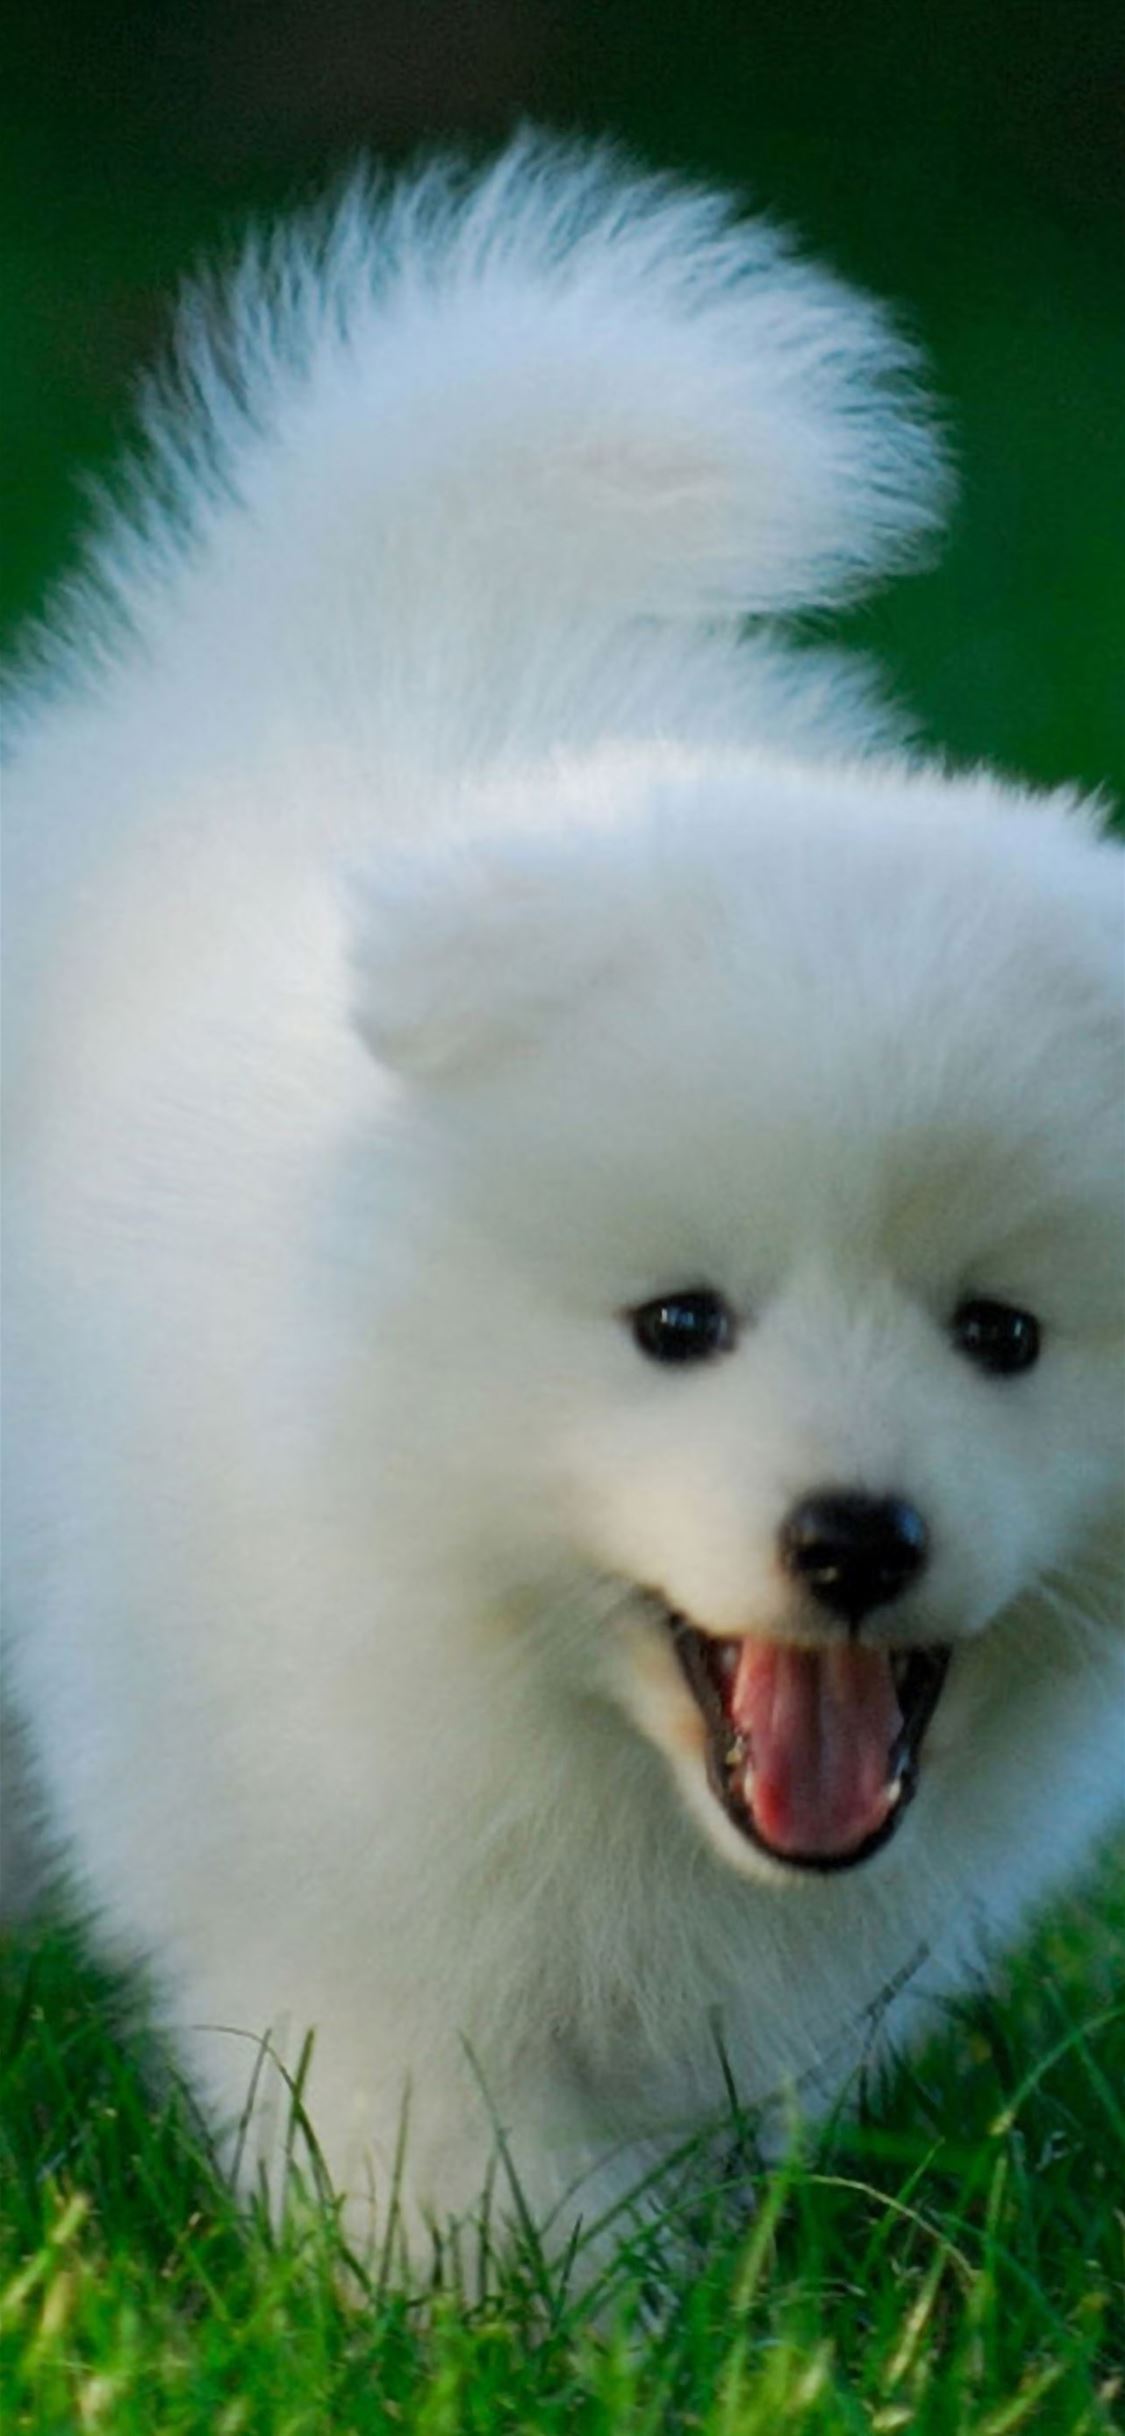 Cute Puppy Running On Grassland iPhone wallpaper 